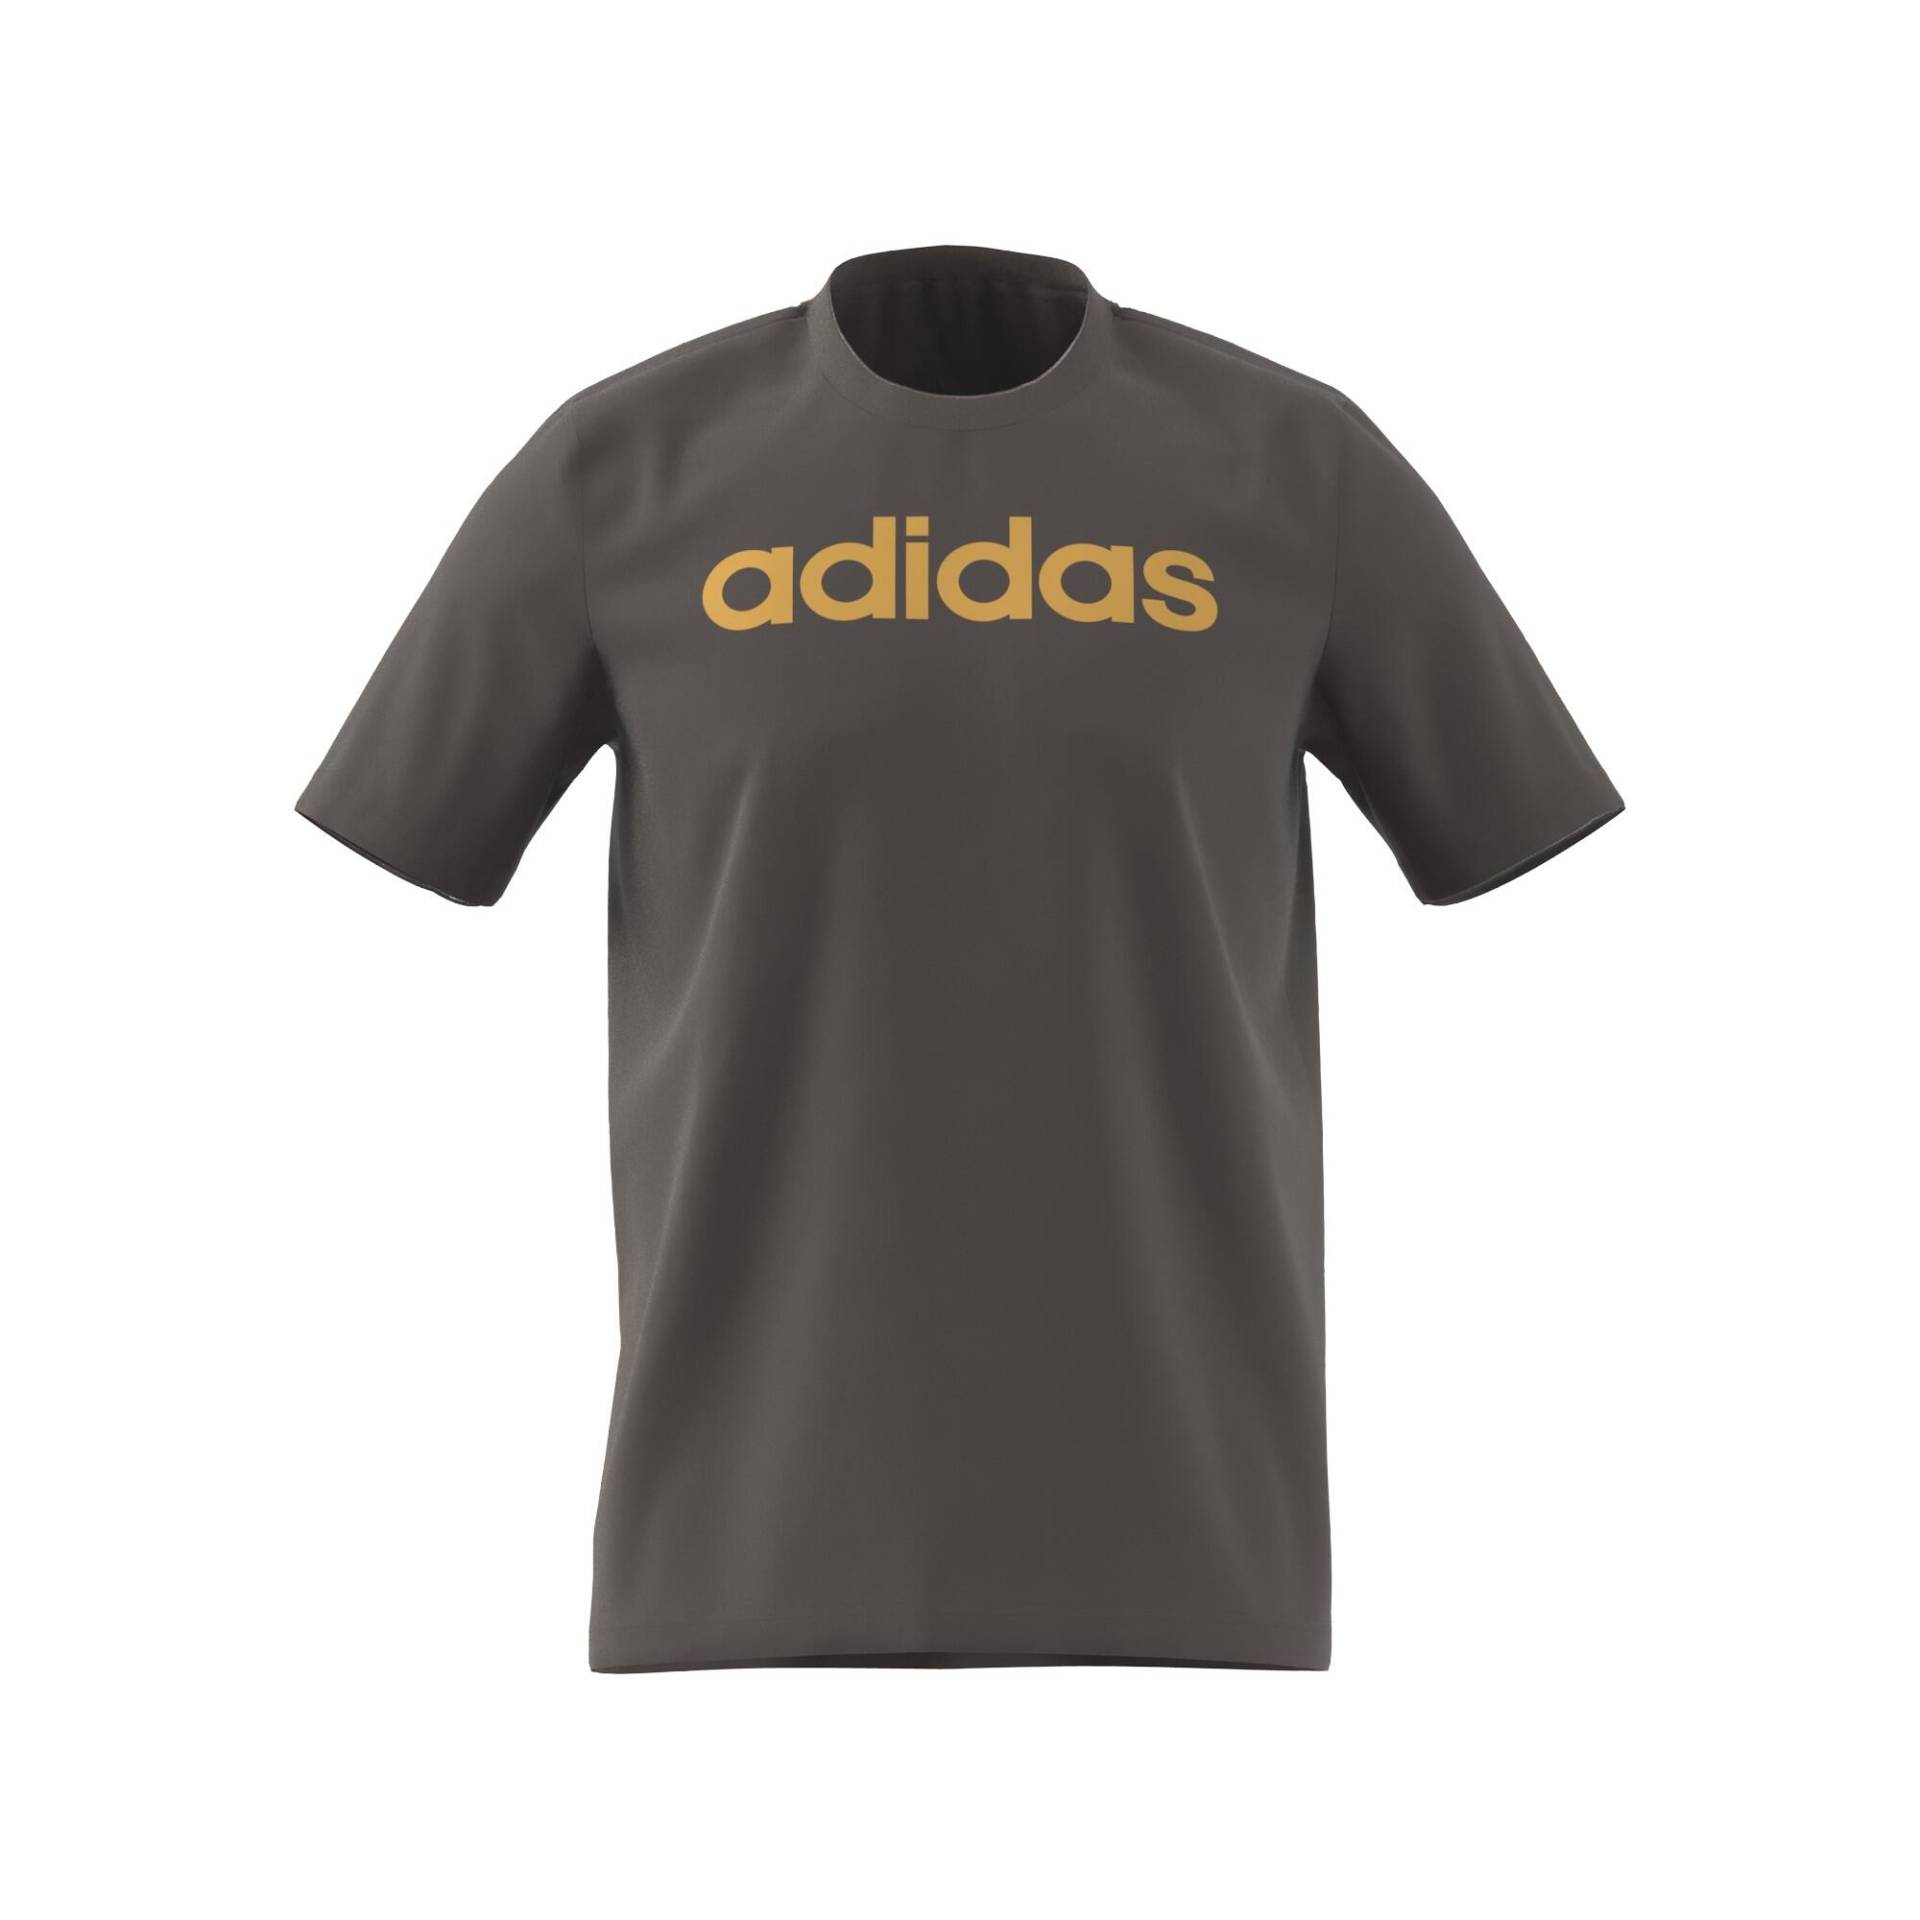 ADIDAS T-Shirt Herren weich - grau von Adidas